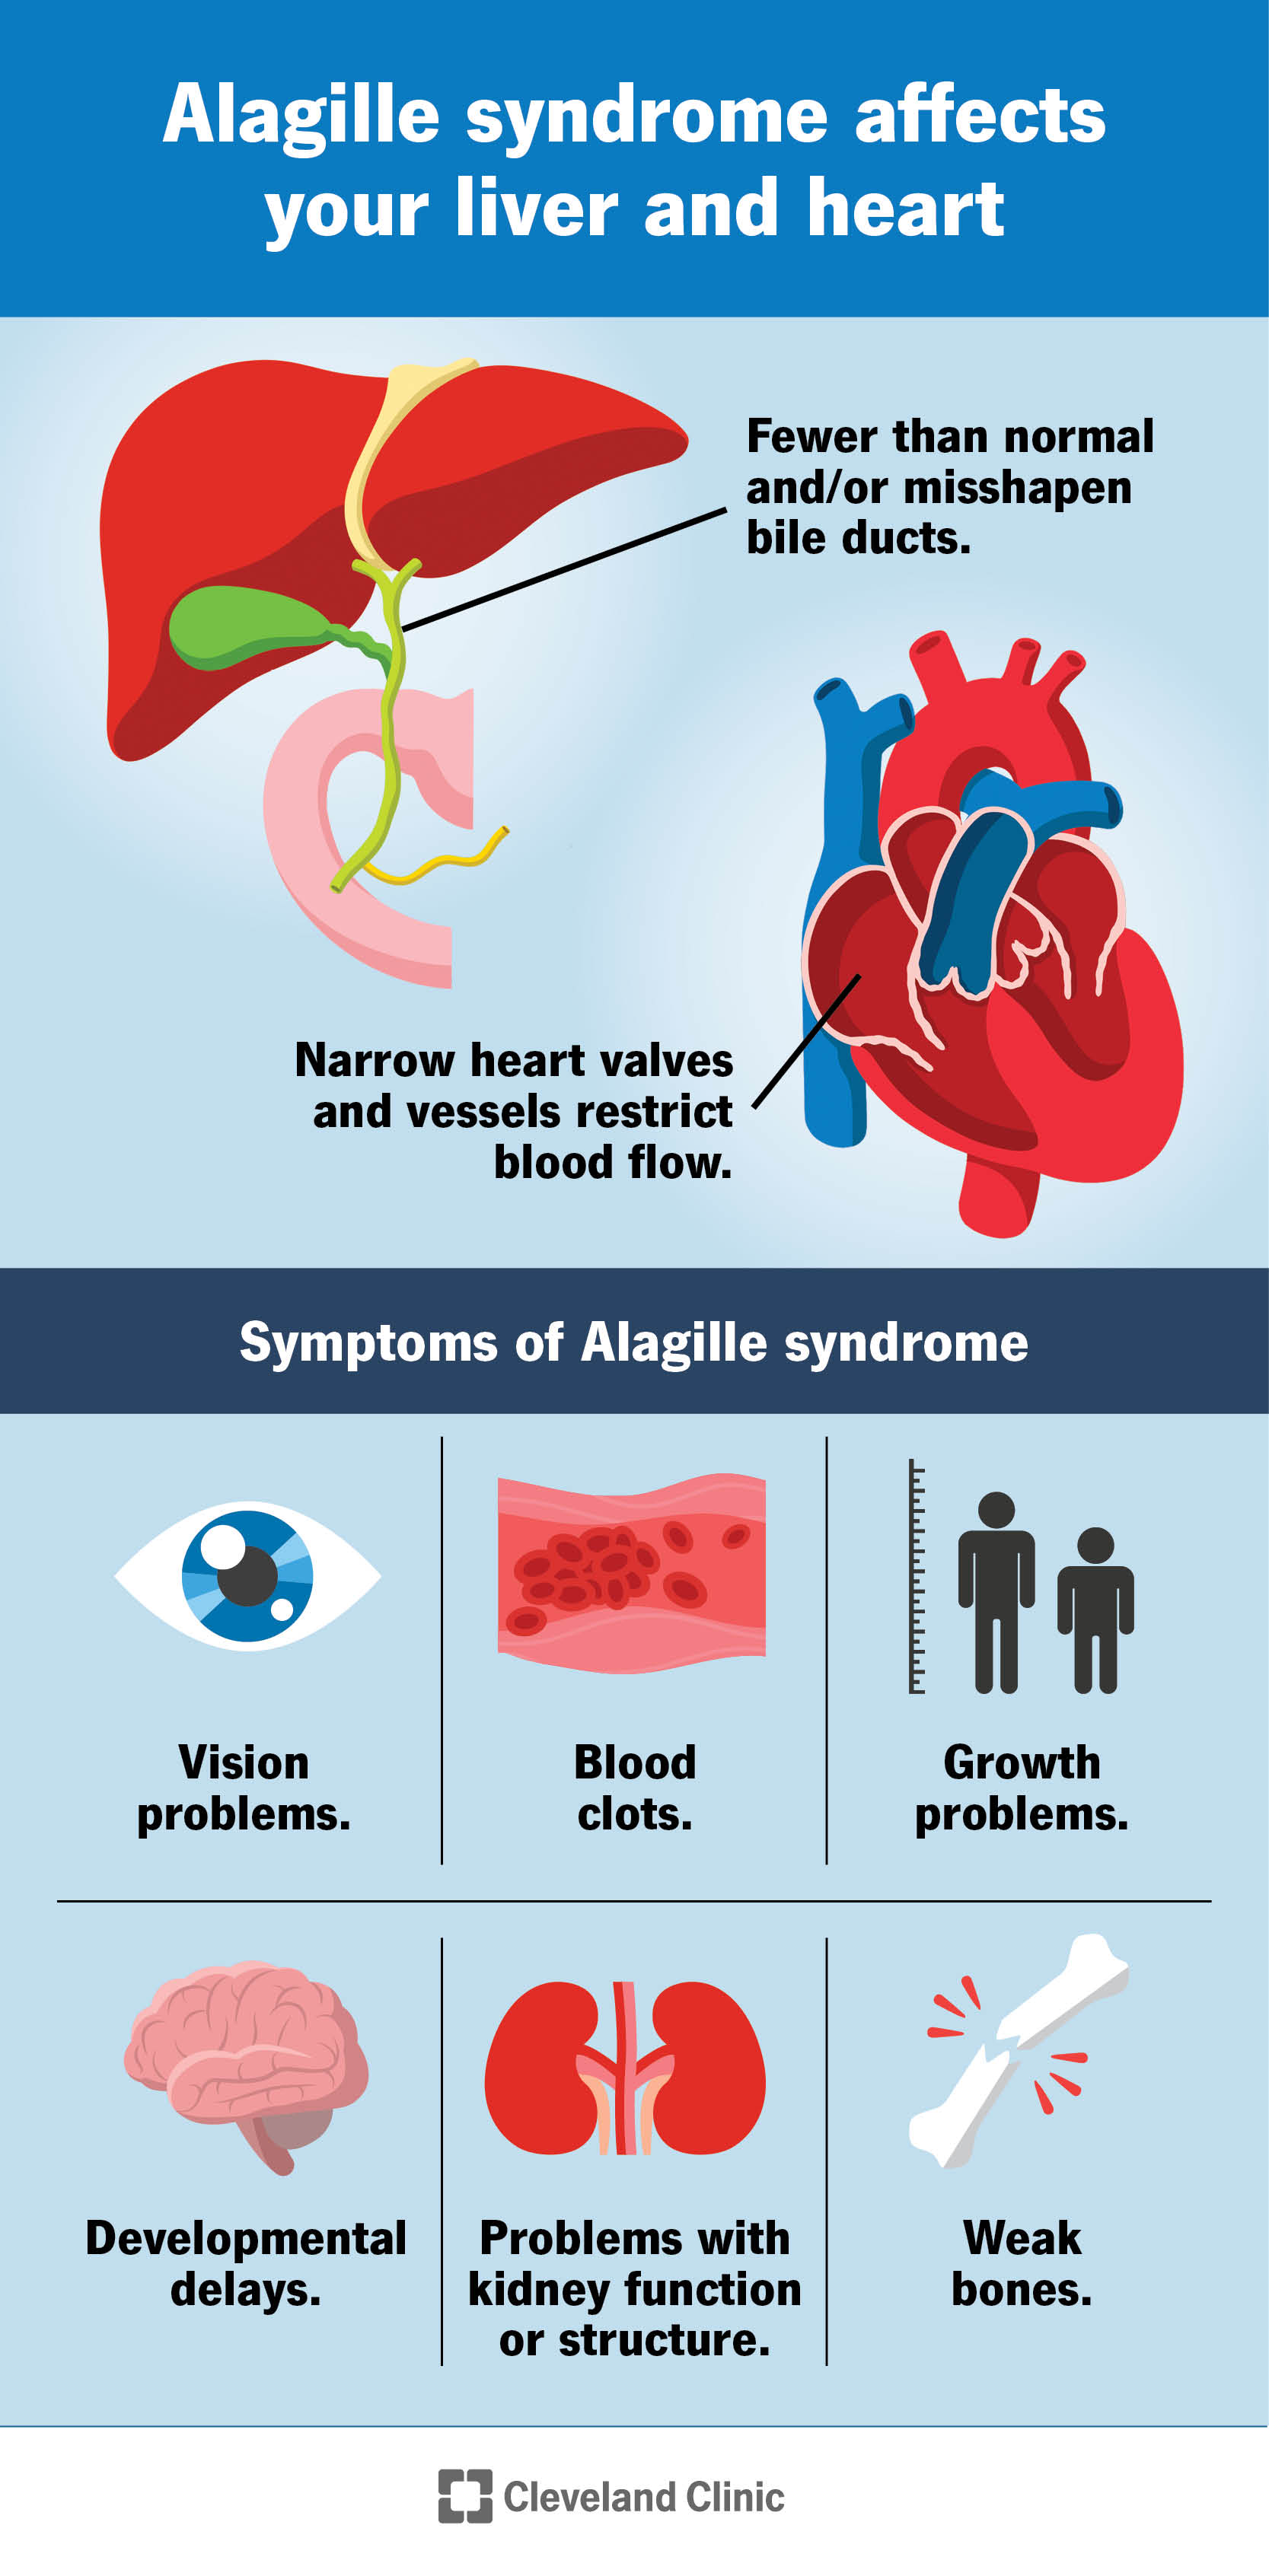 La sindrome di Alagille colpisce il cuore e il fegato e provoca altri sintomi in tutto il corpo.